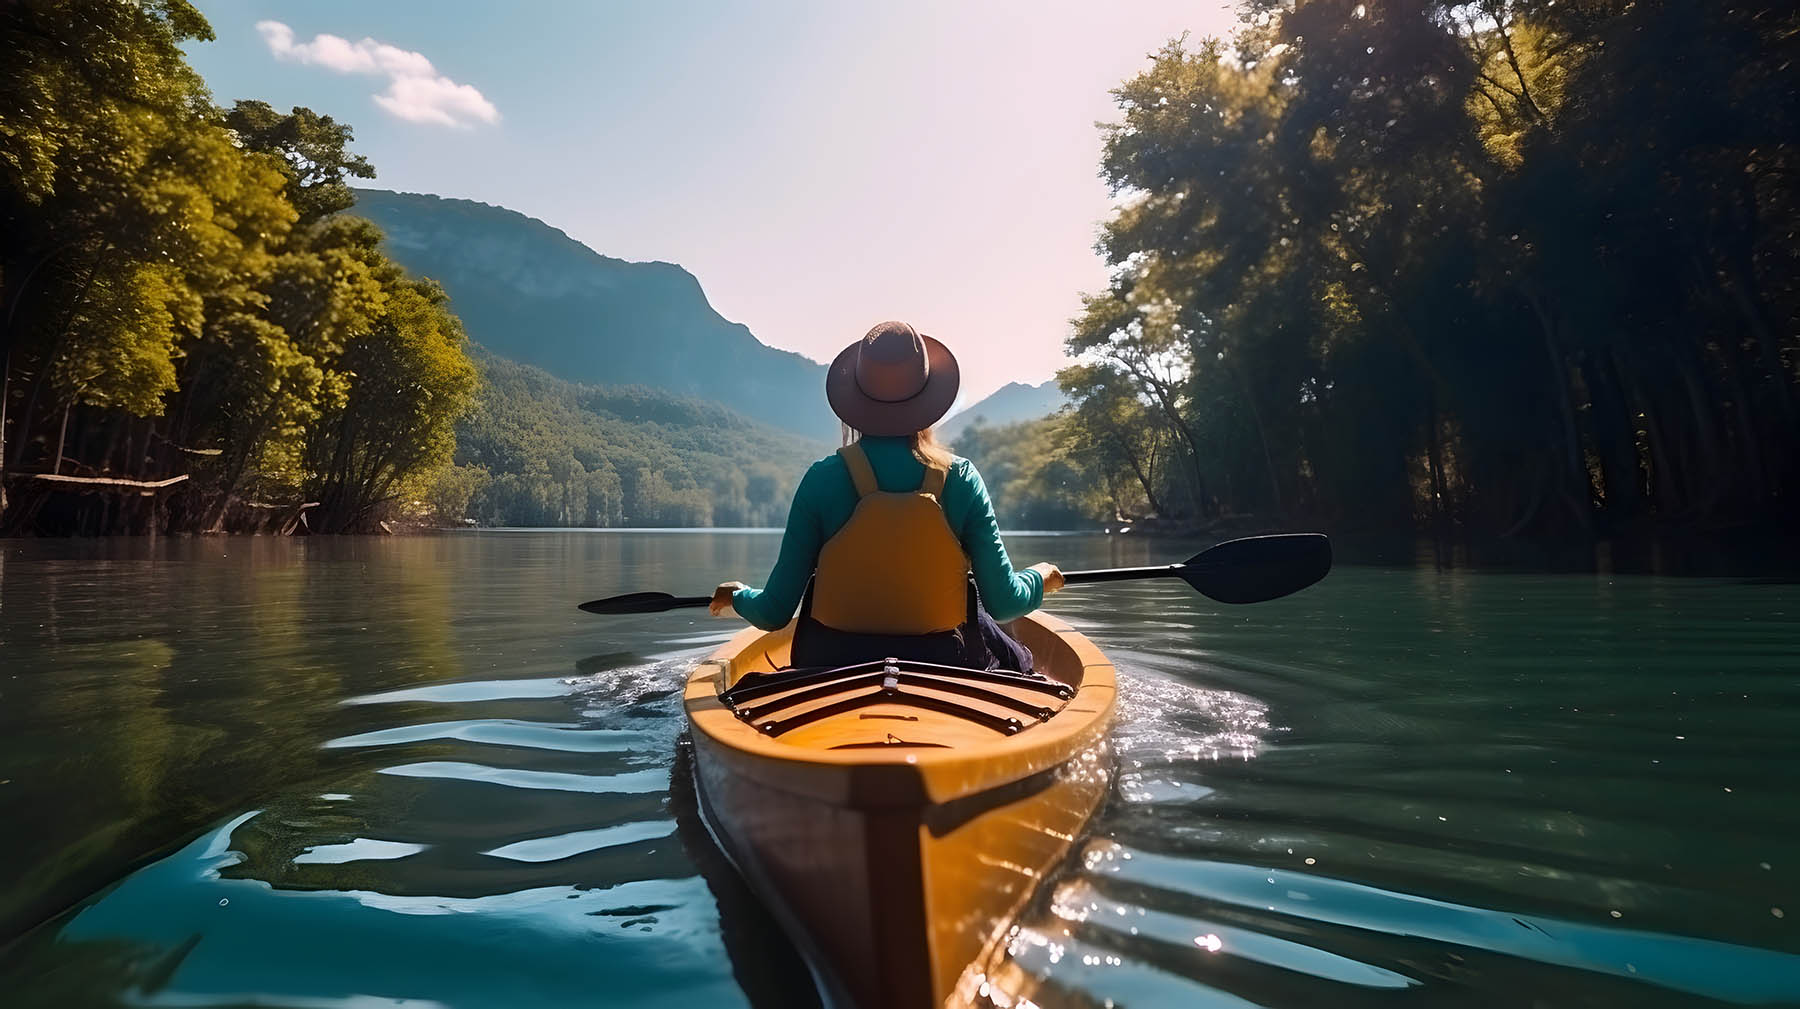 Hocking Hills Kayak and Canoe Tours: Showcase guided kayak and canoe tours along the area’s scenic waterways.